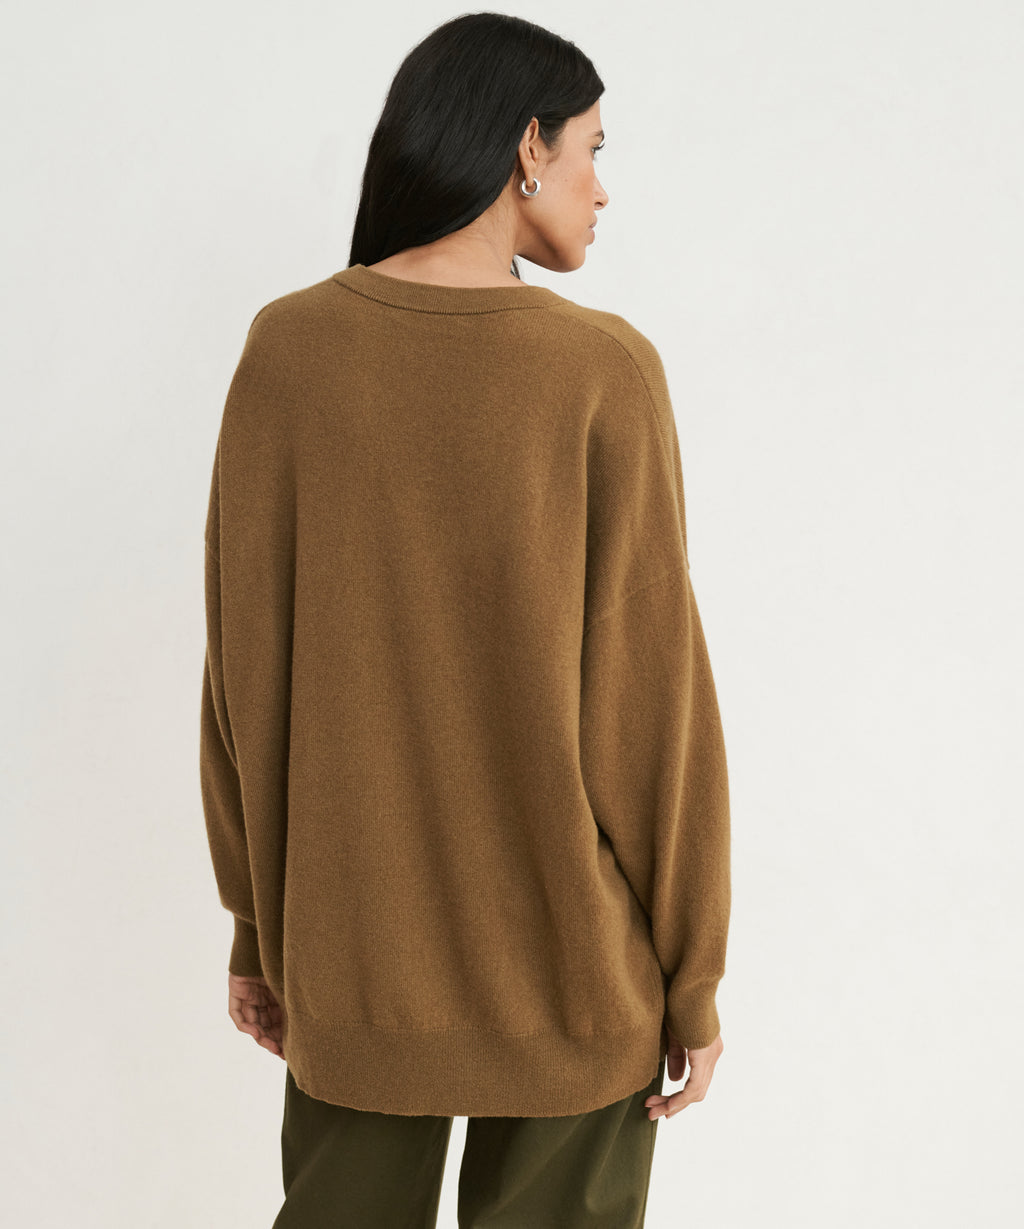 Jenni Kayne Women's Charlie V-Neck Sweater